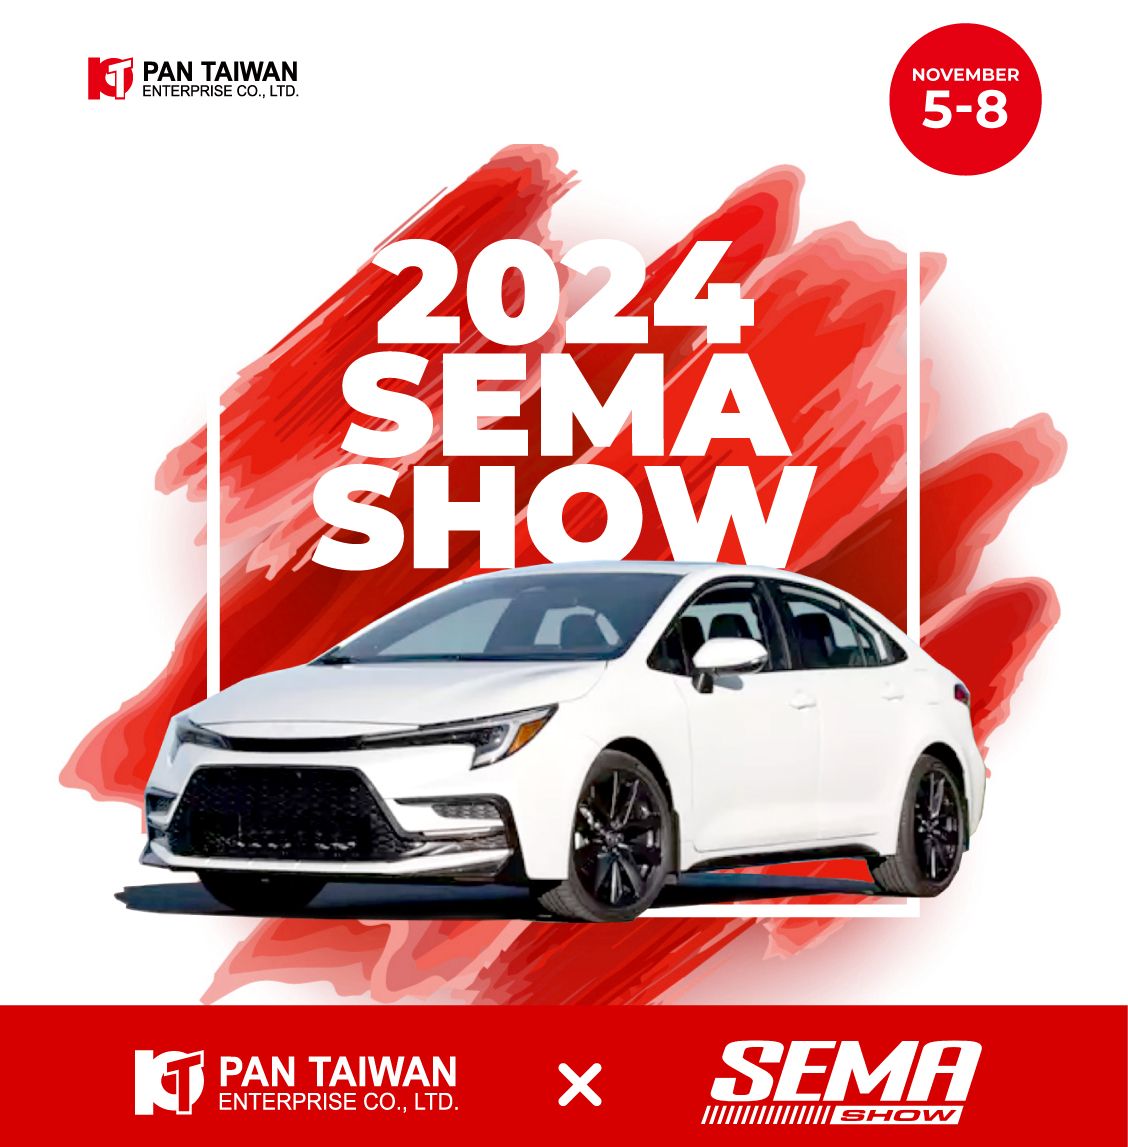 חברת יצרנית חלקי רכב מובילה המבוססת בטייוואן, שמחה להודיע שאנו נציג את המוצרים החדשניים שלנו בתערוכת SEMA בלאס וגאס מה-5 עד ה-8 בנובמבר, 2024.